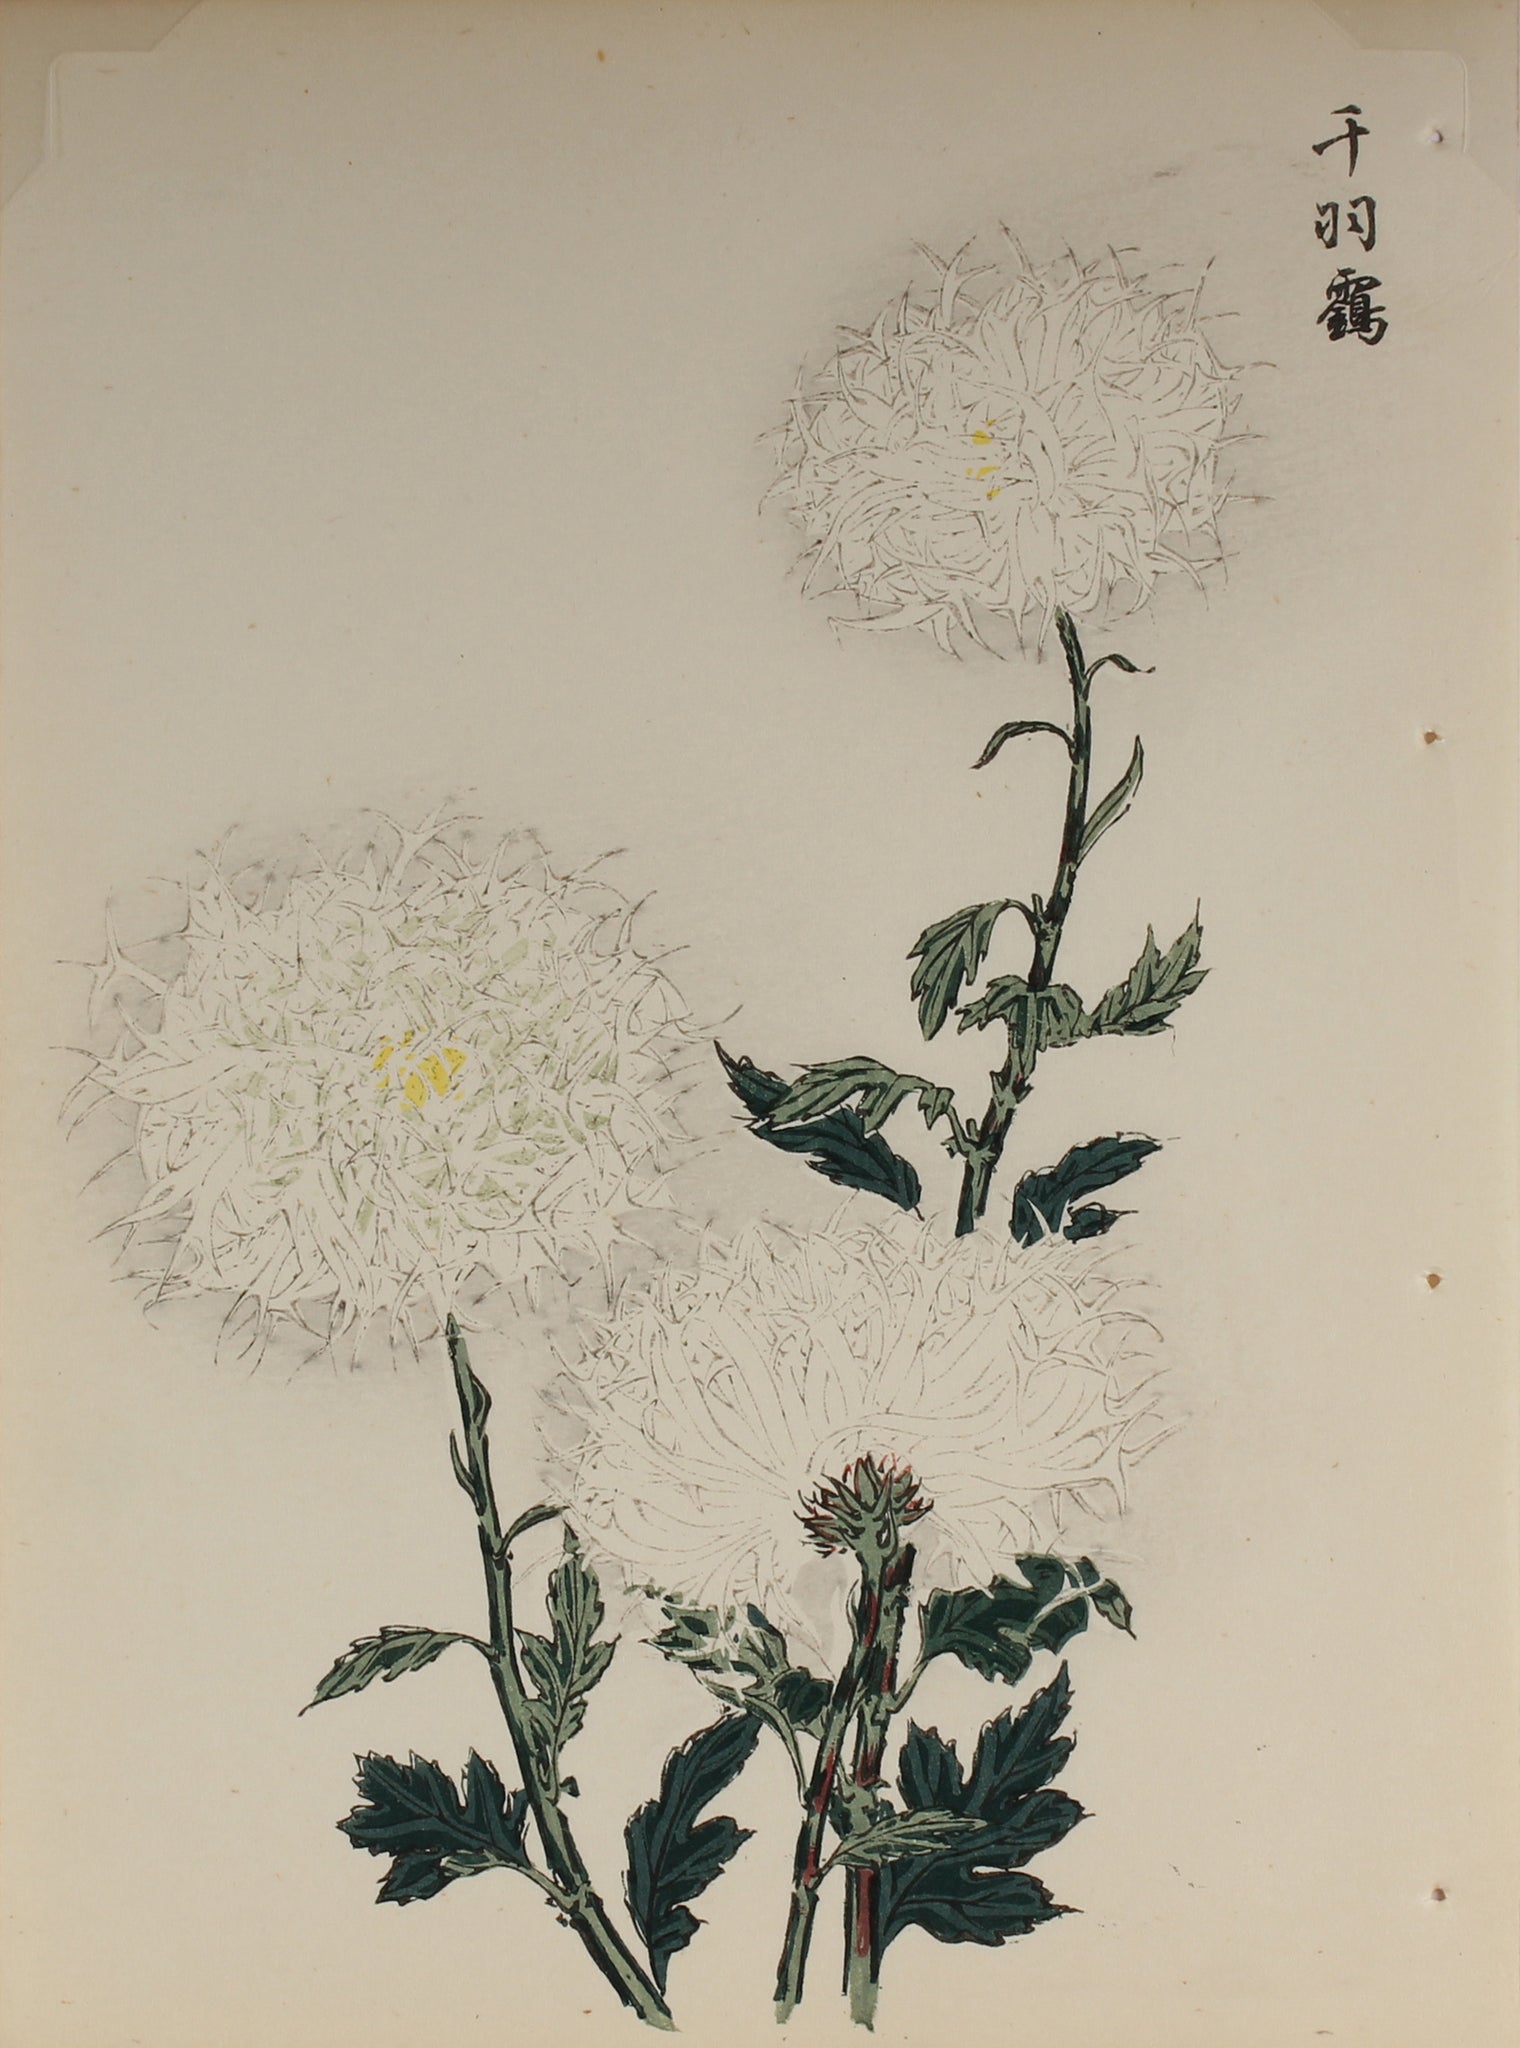 100 chrysanthemums by Keika - p13